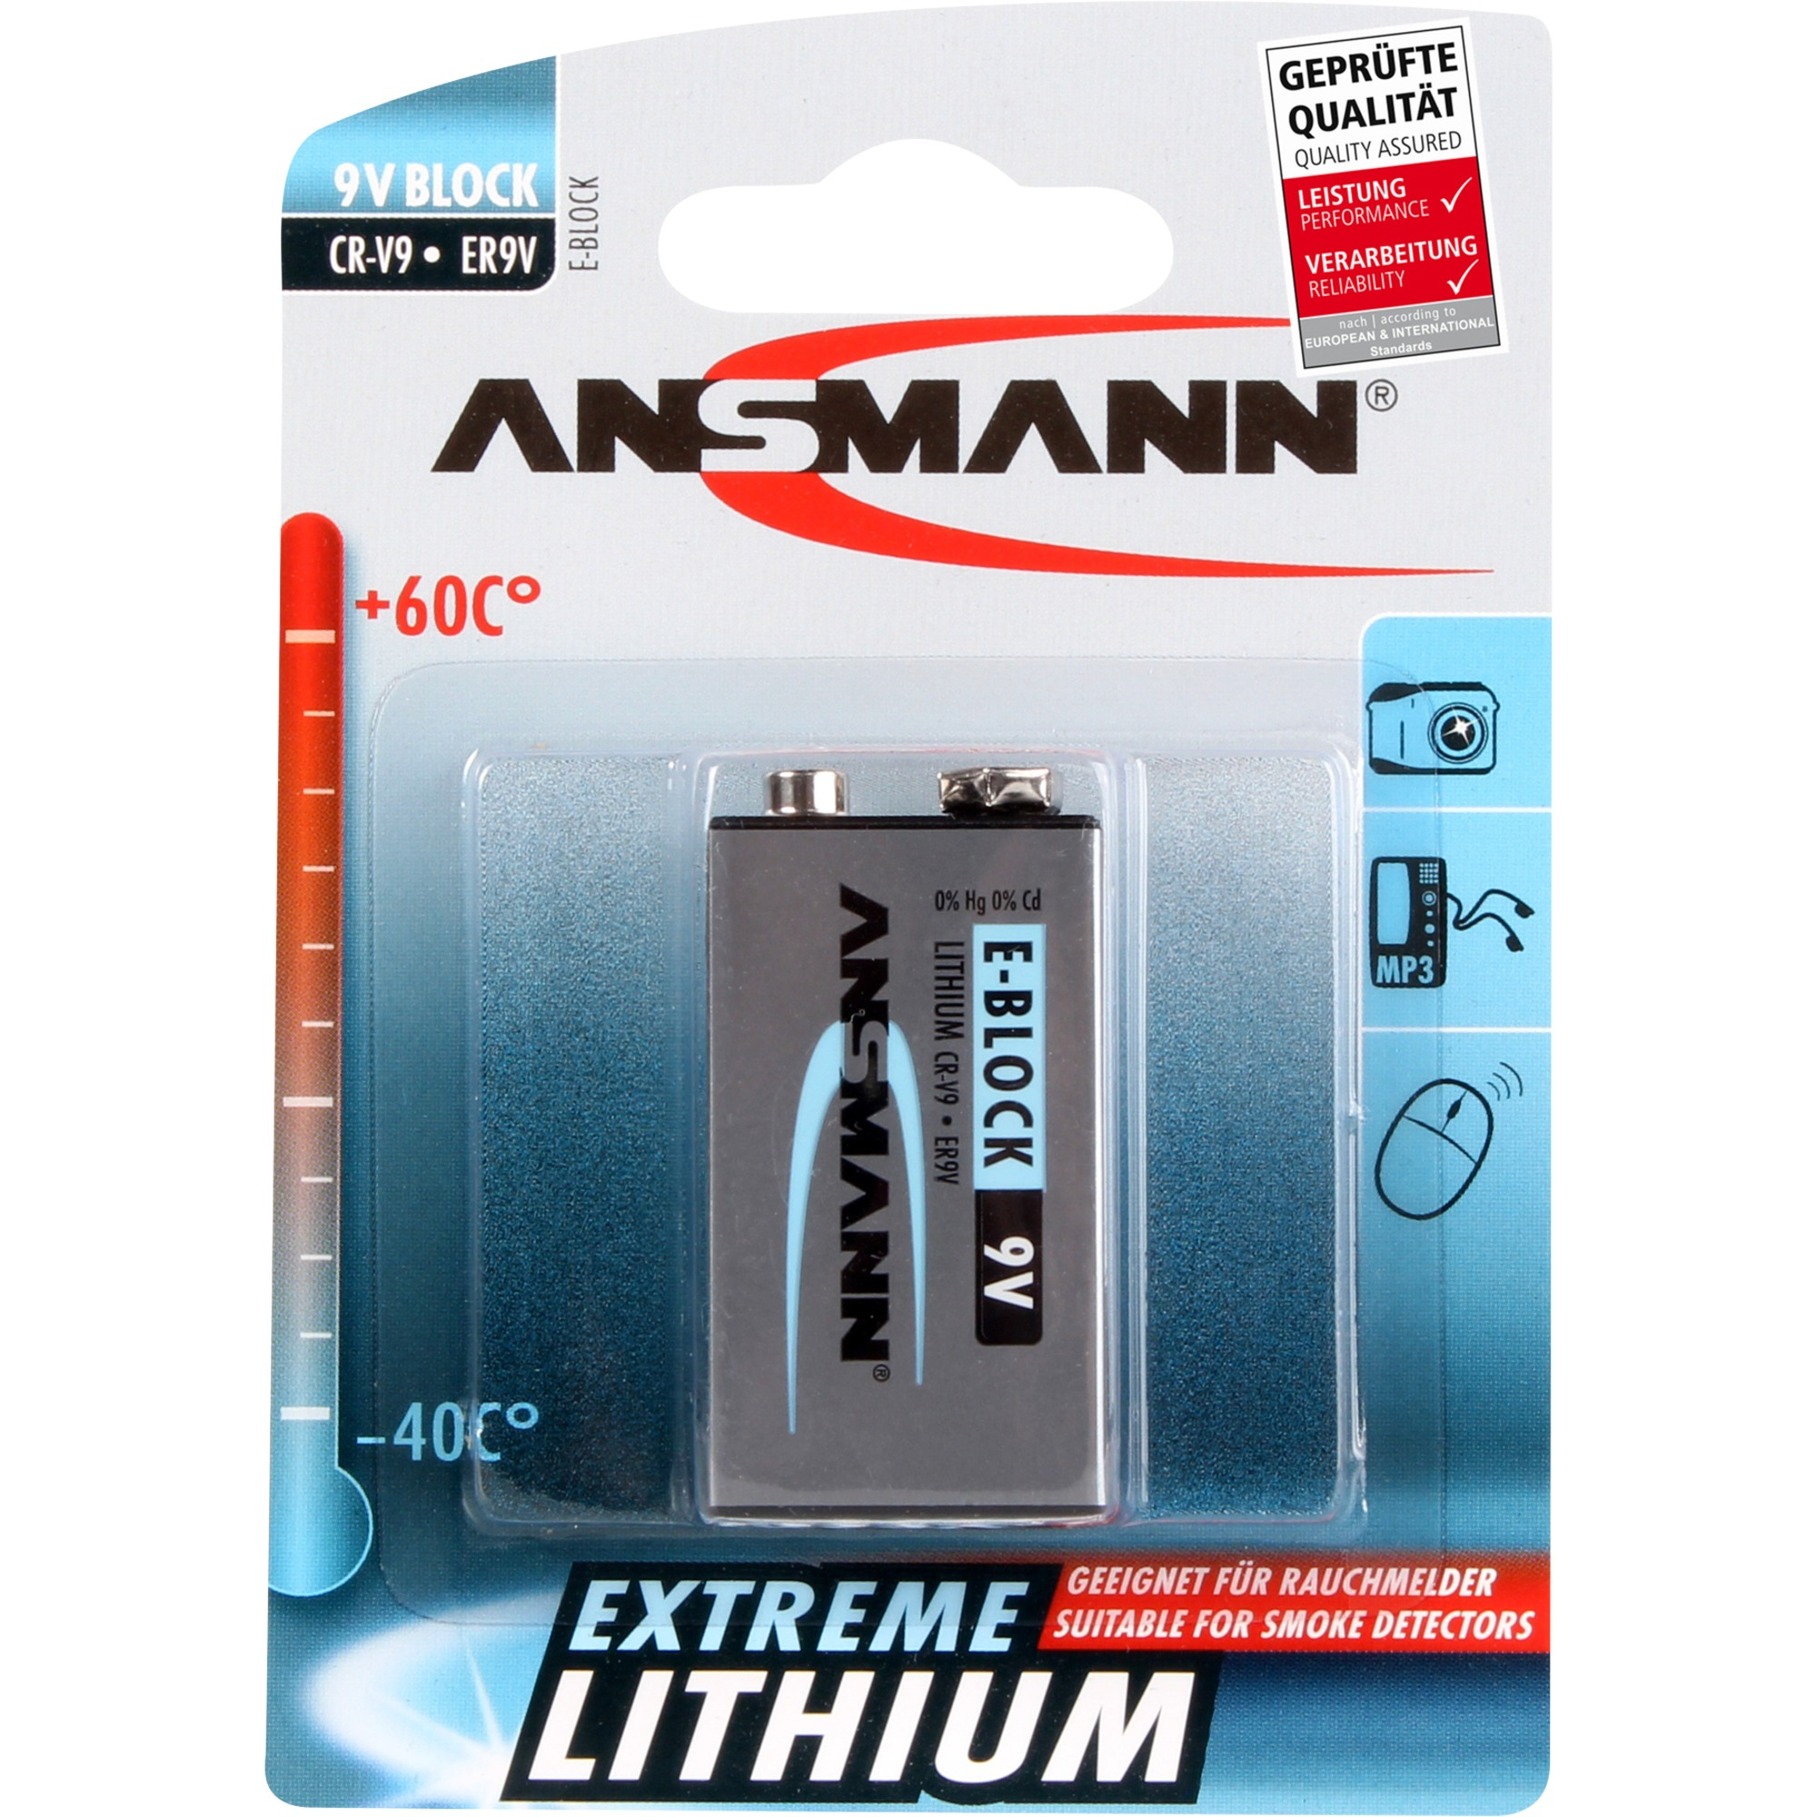 Image of Alternate - Extreme Lithium 9V-Block, Batterie online einkaufen bei Alternate